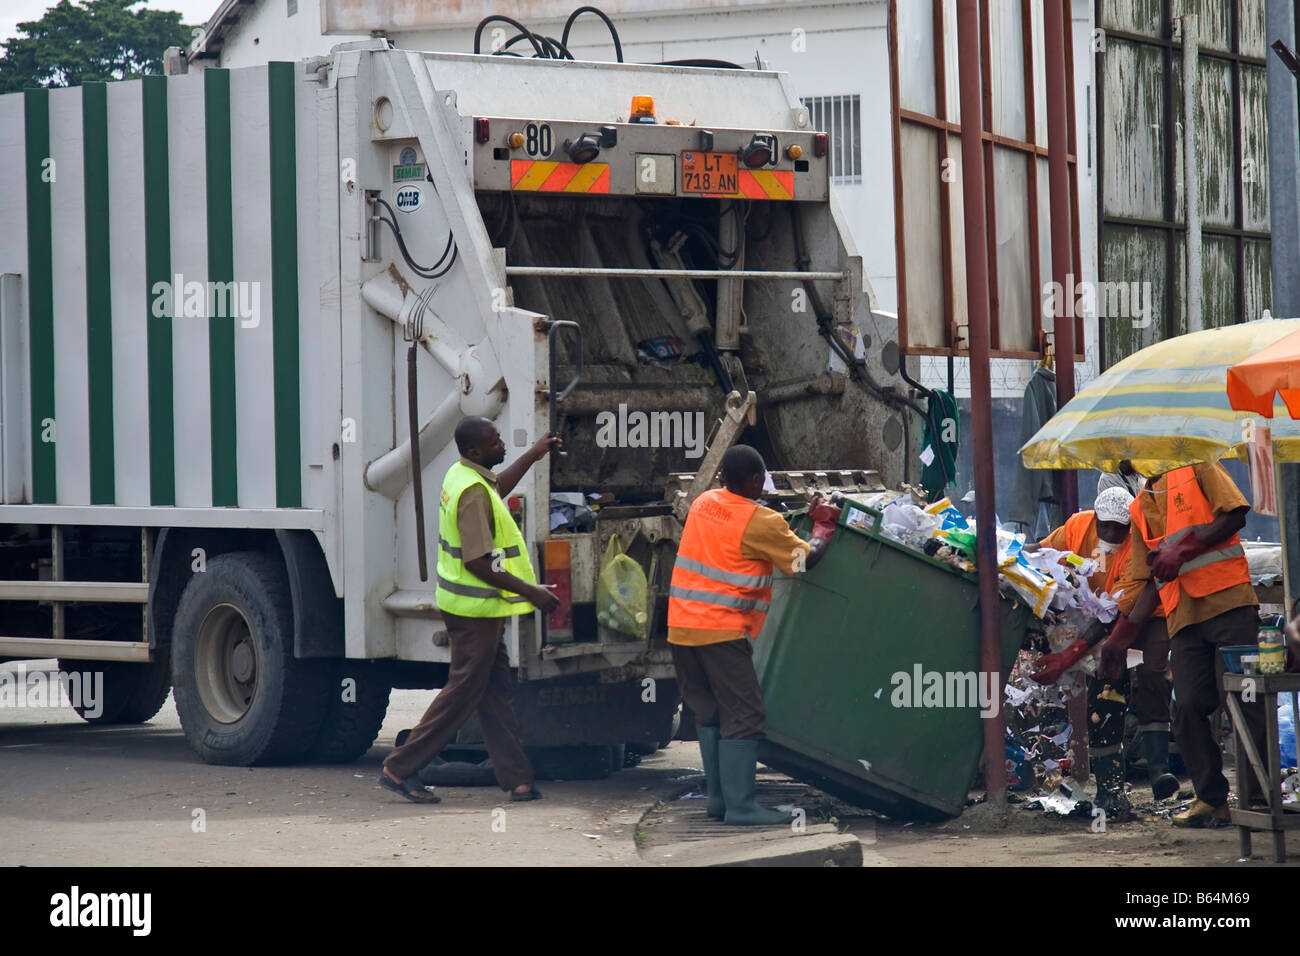 Collecte de déchets avec camion et employés, Douala, Cameroun, Afrique Banque D'Images